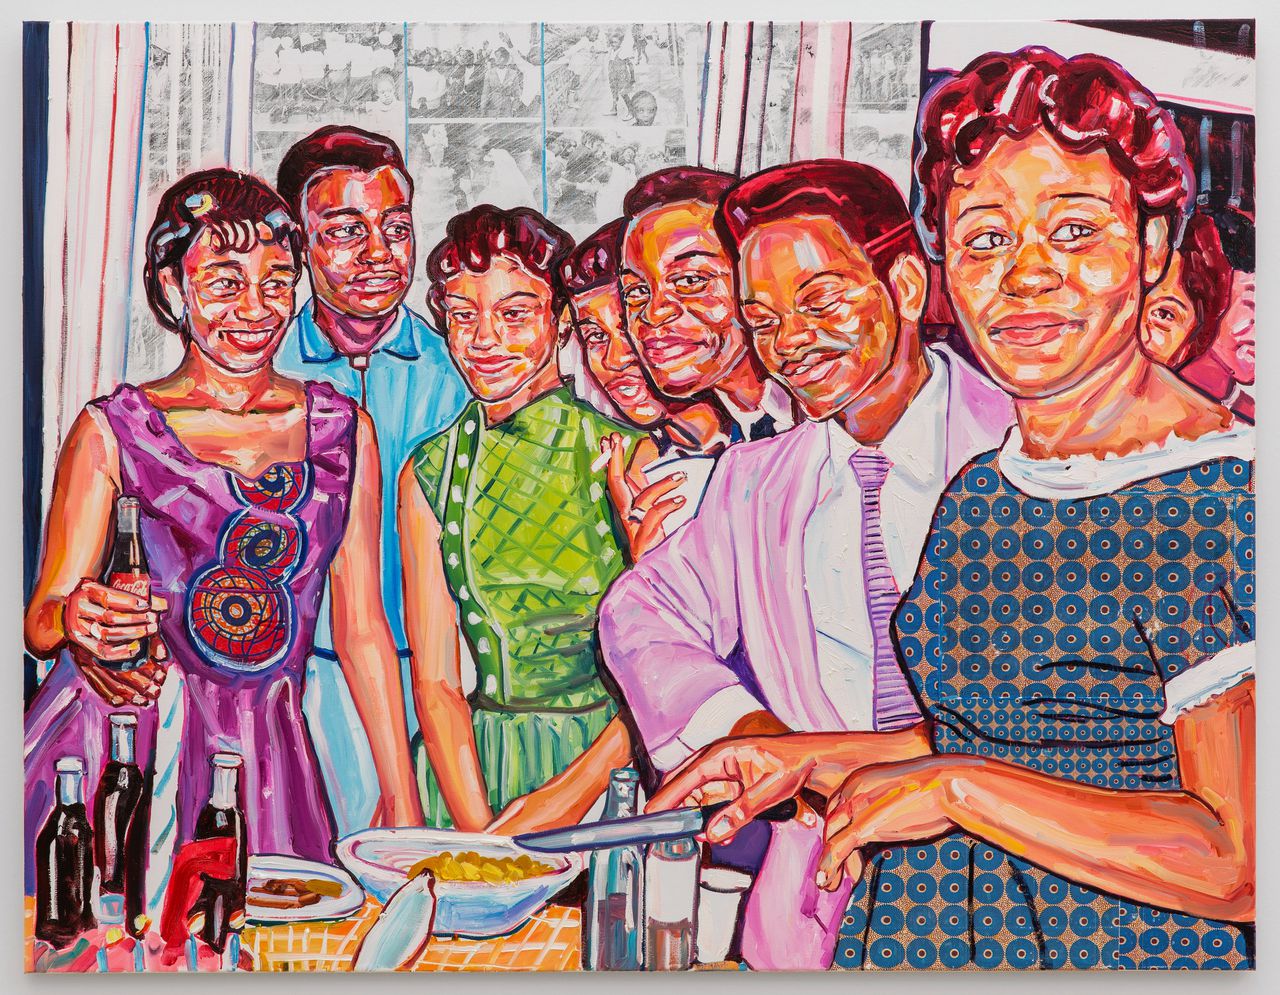 Esiri Erheriene-Essi maakt krachtige, kleurrijke schilderijen van alledaagse taferelen met mensen uit de Afrikaanse diaspora.